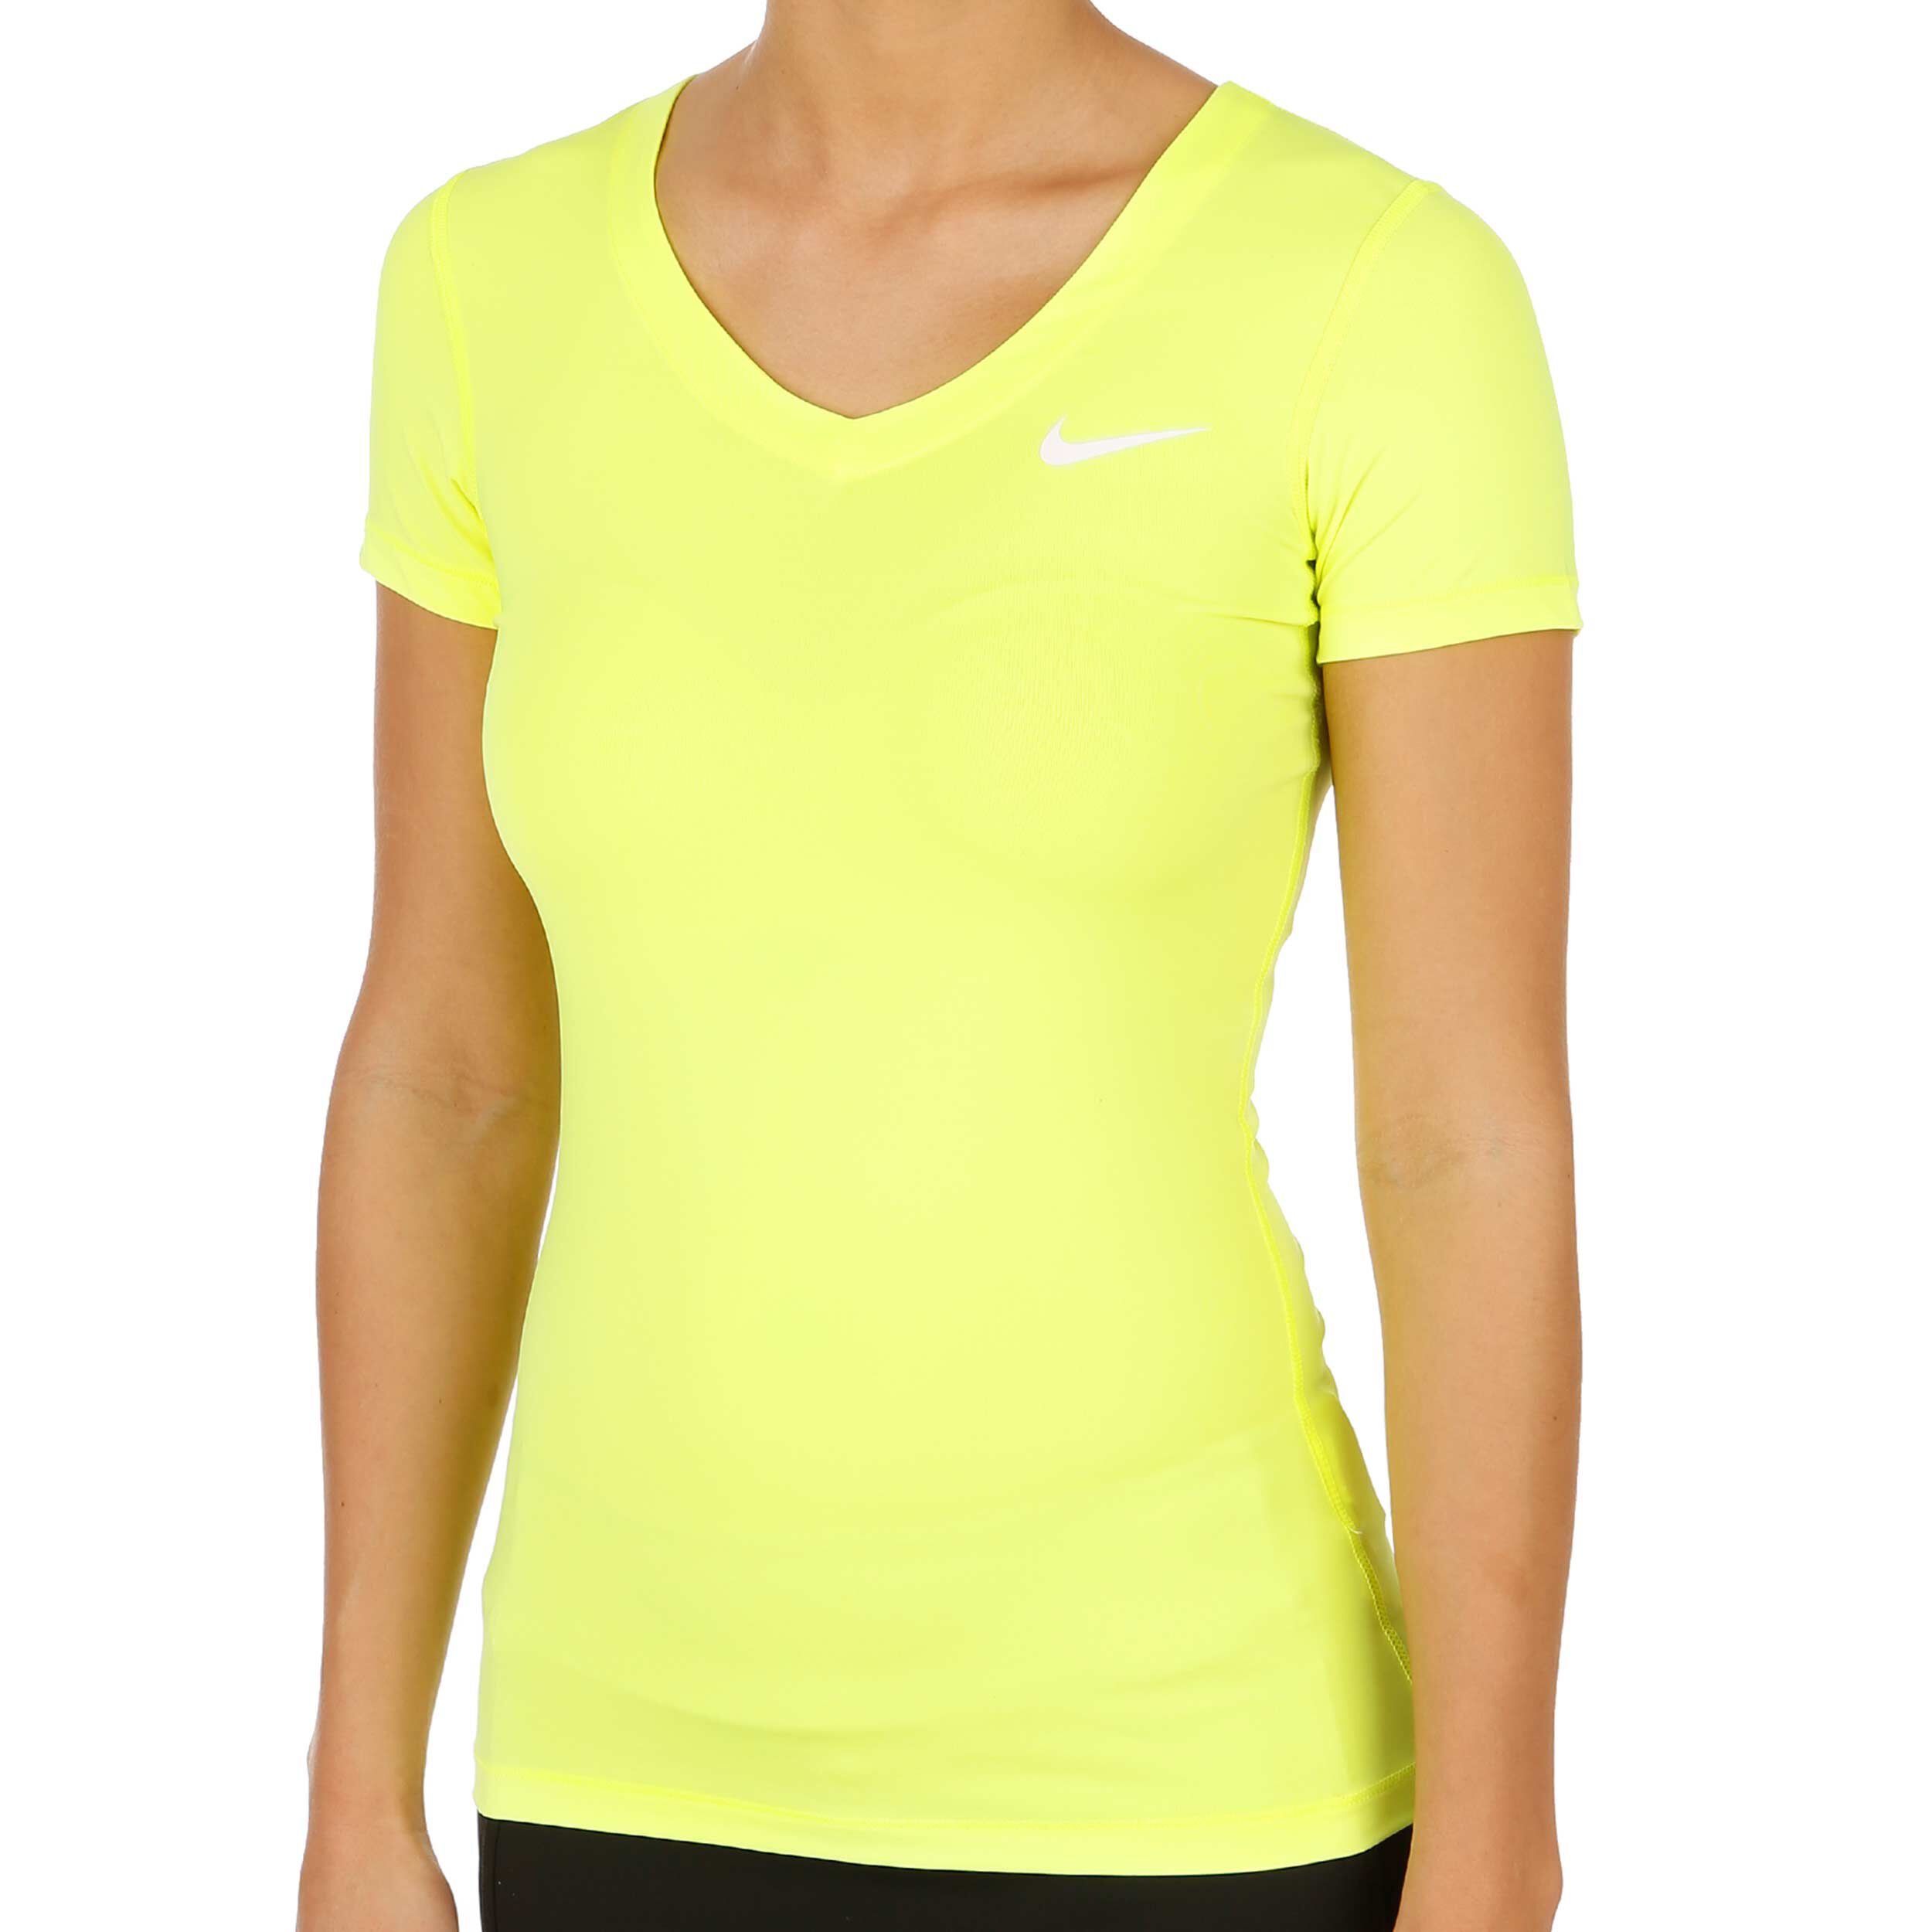 neon yellow nike shirt